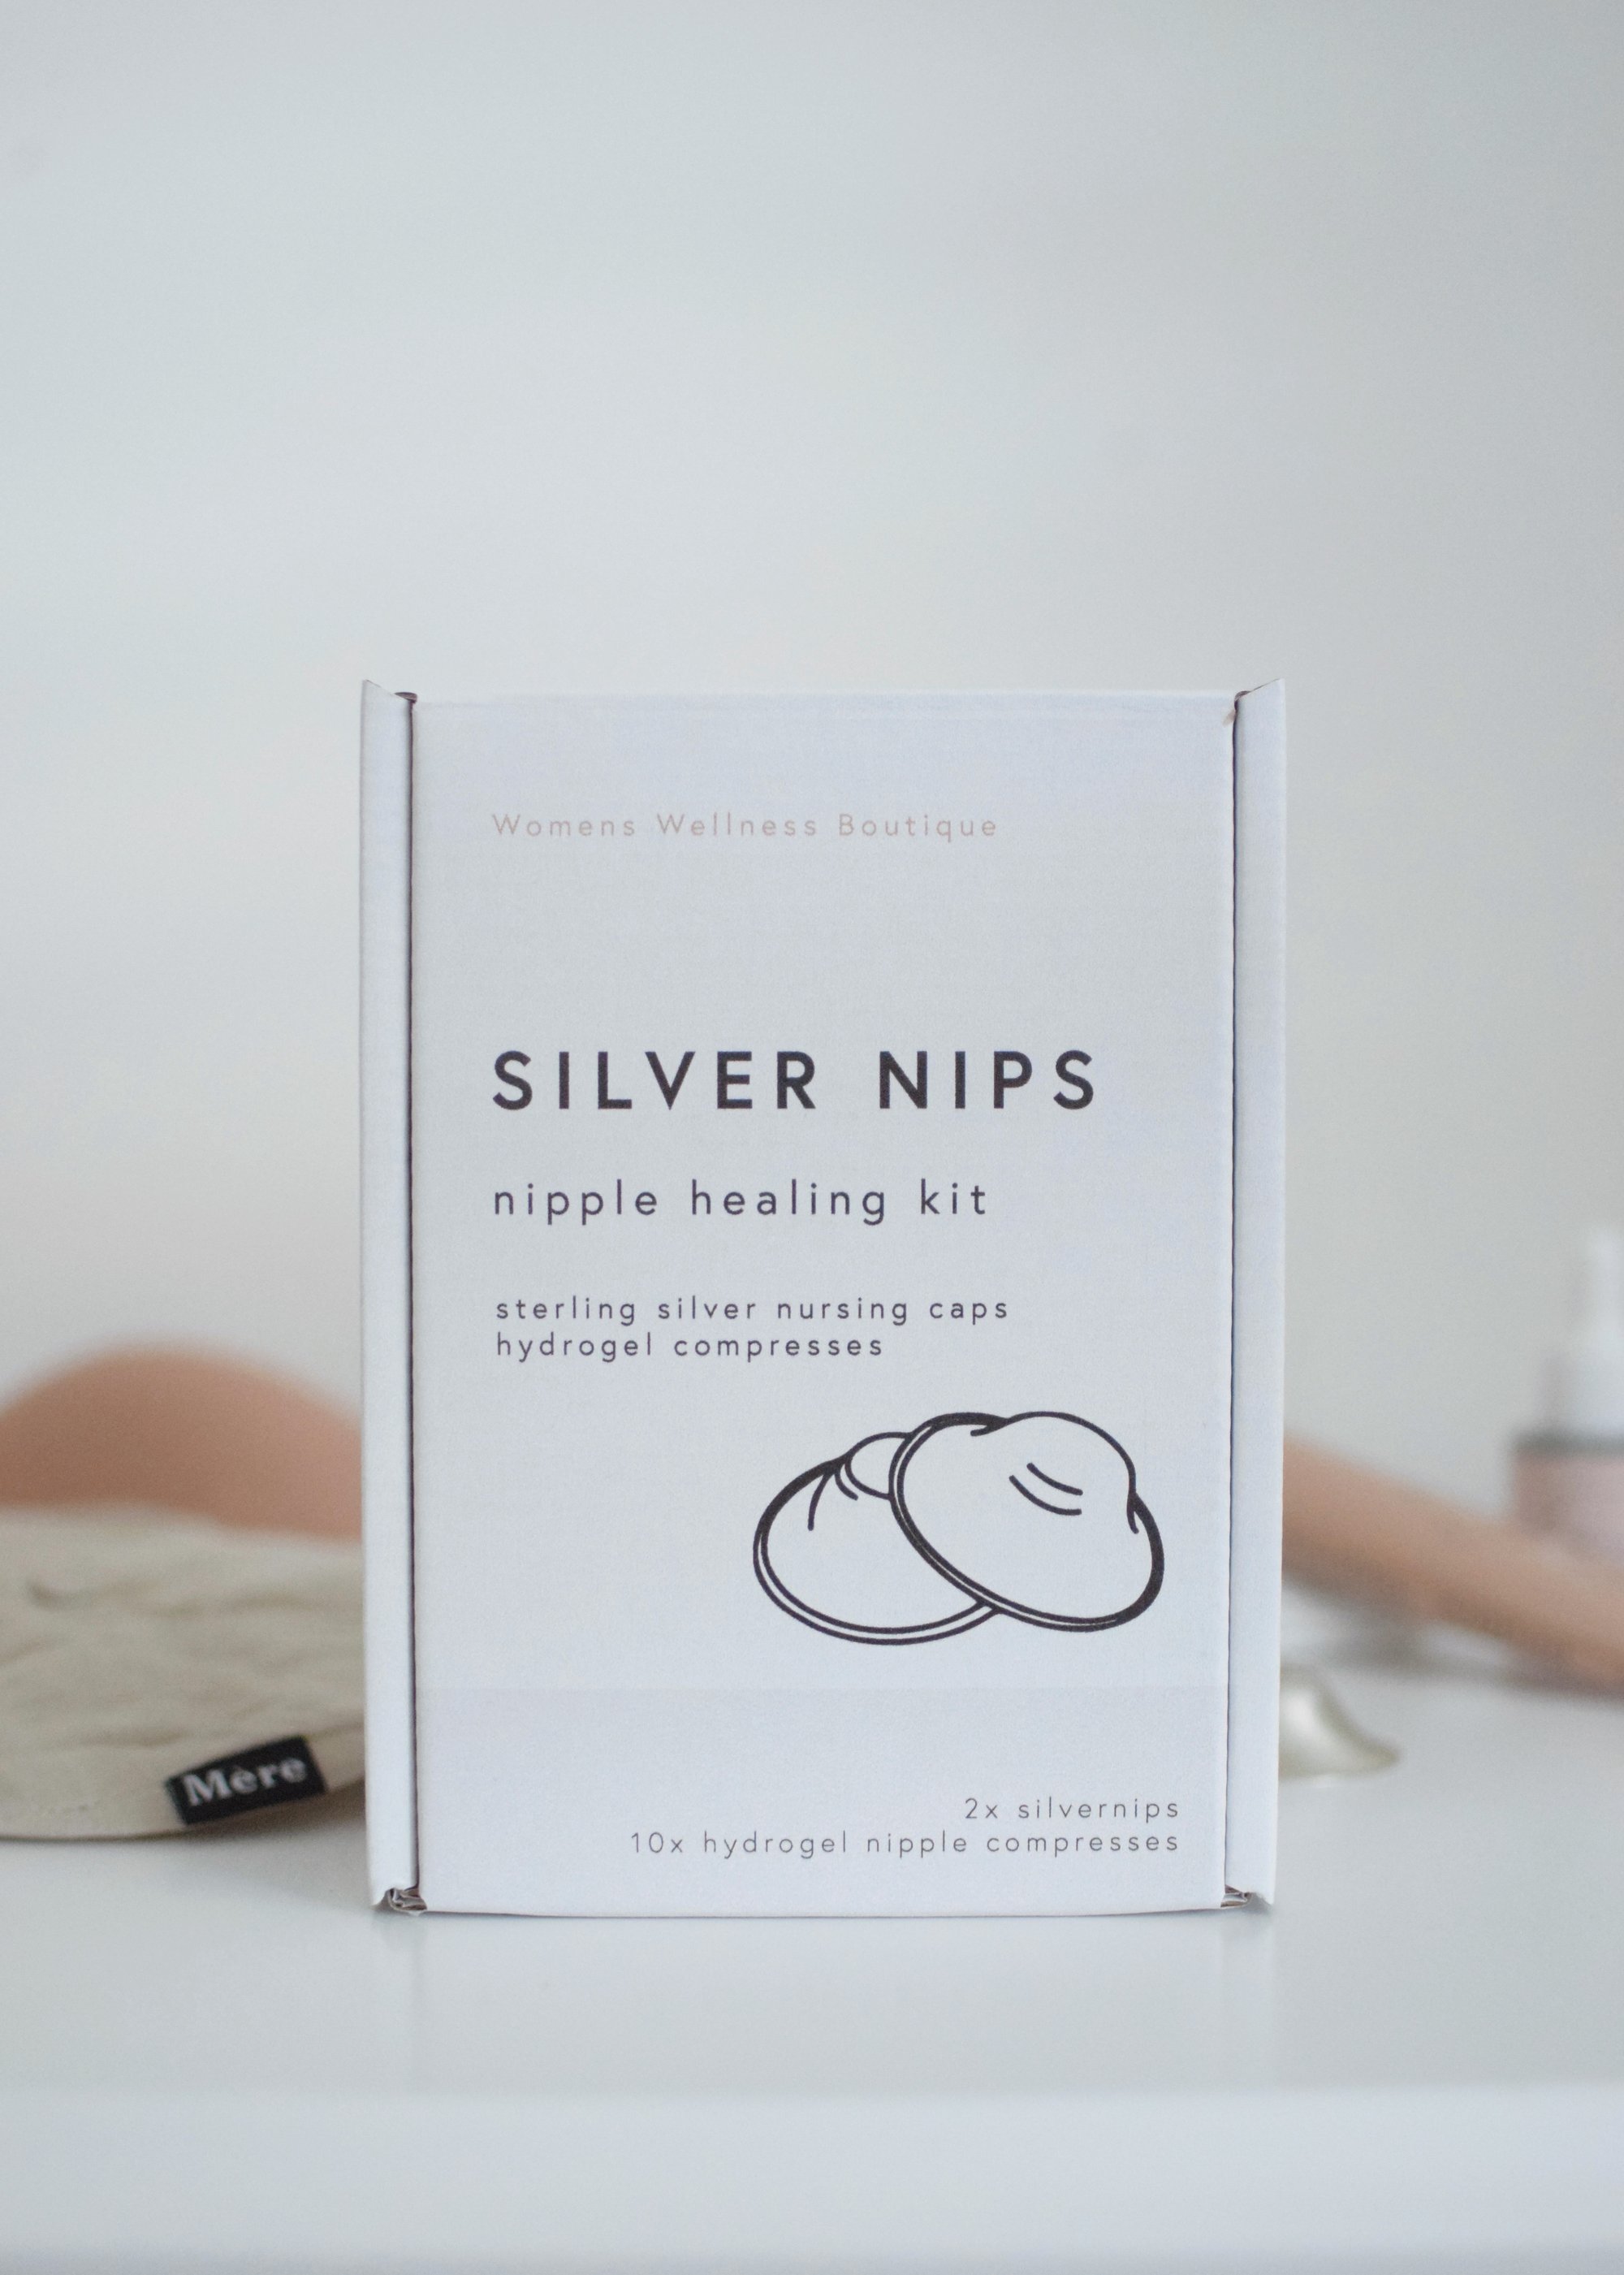 Image of Silver Nips healing kit